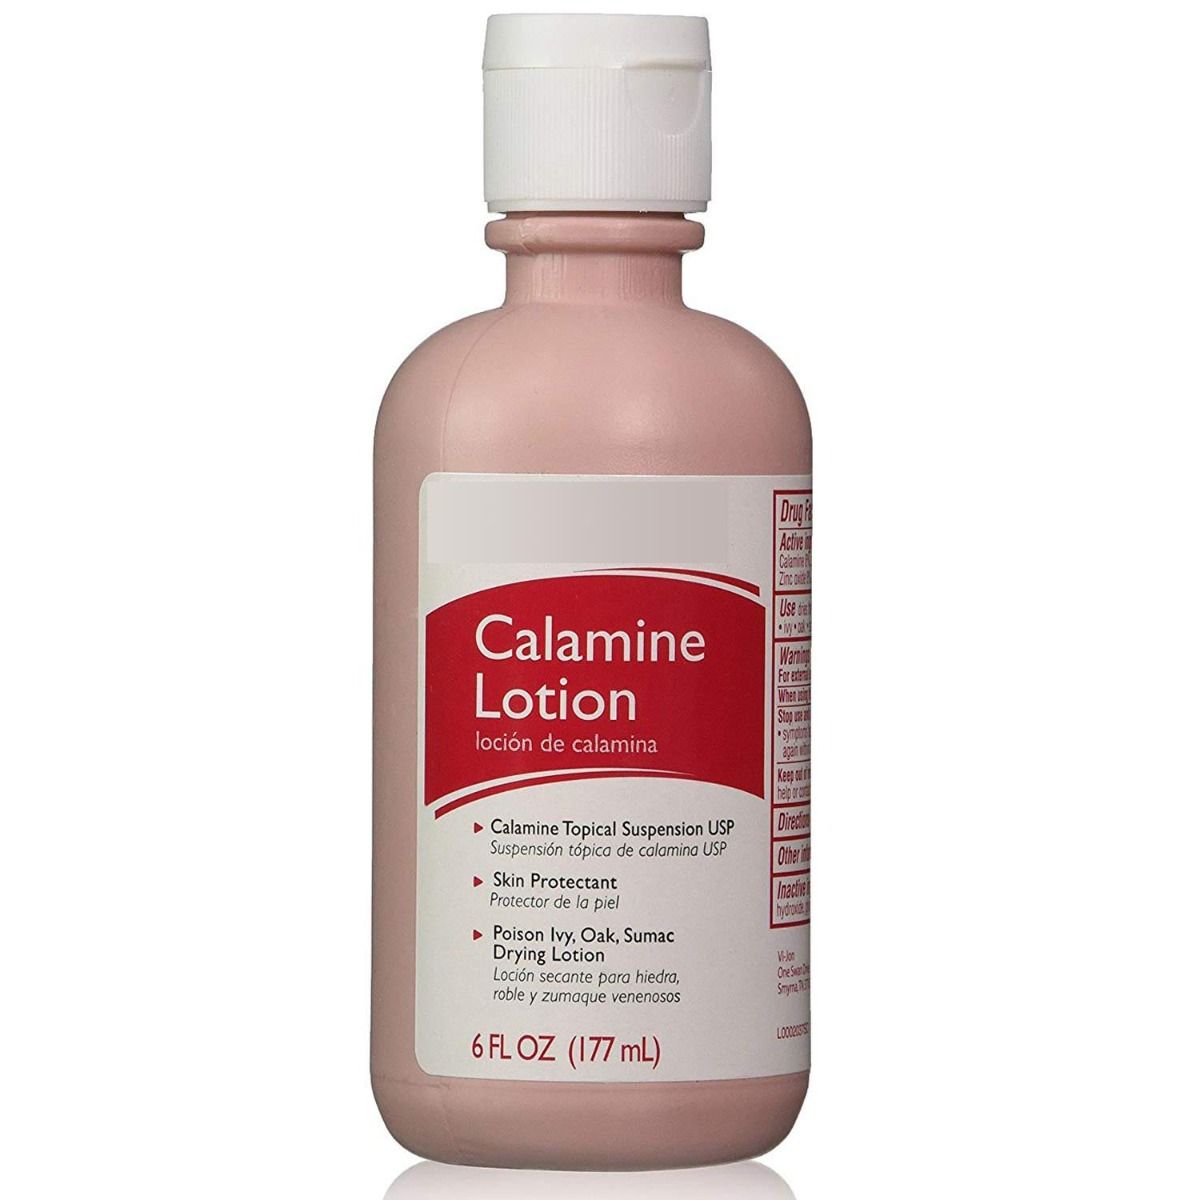 Calamine Lotion contains zinc oxide